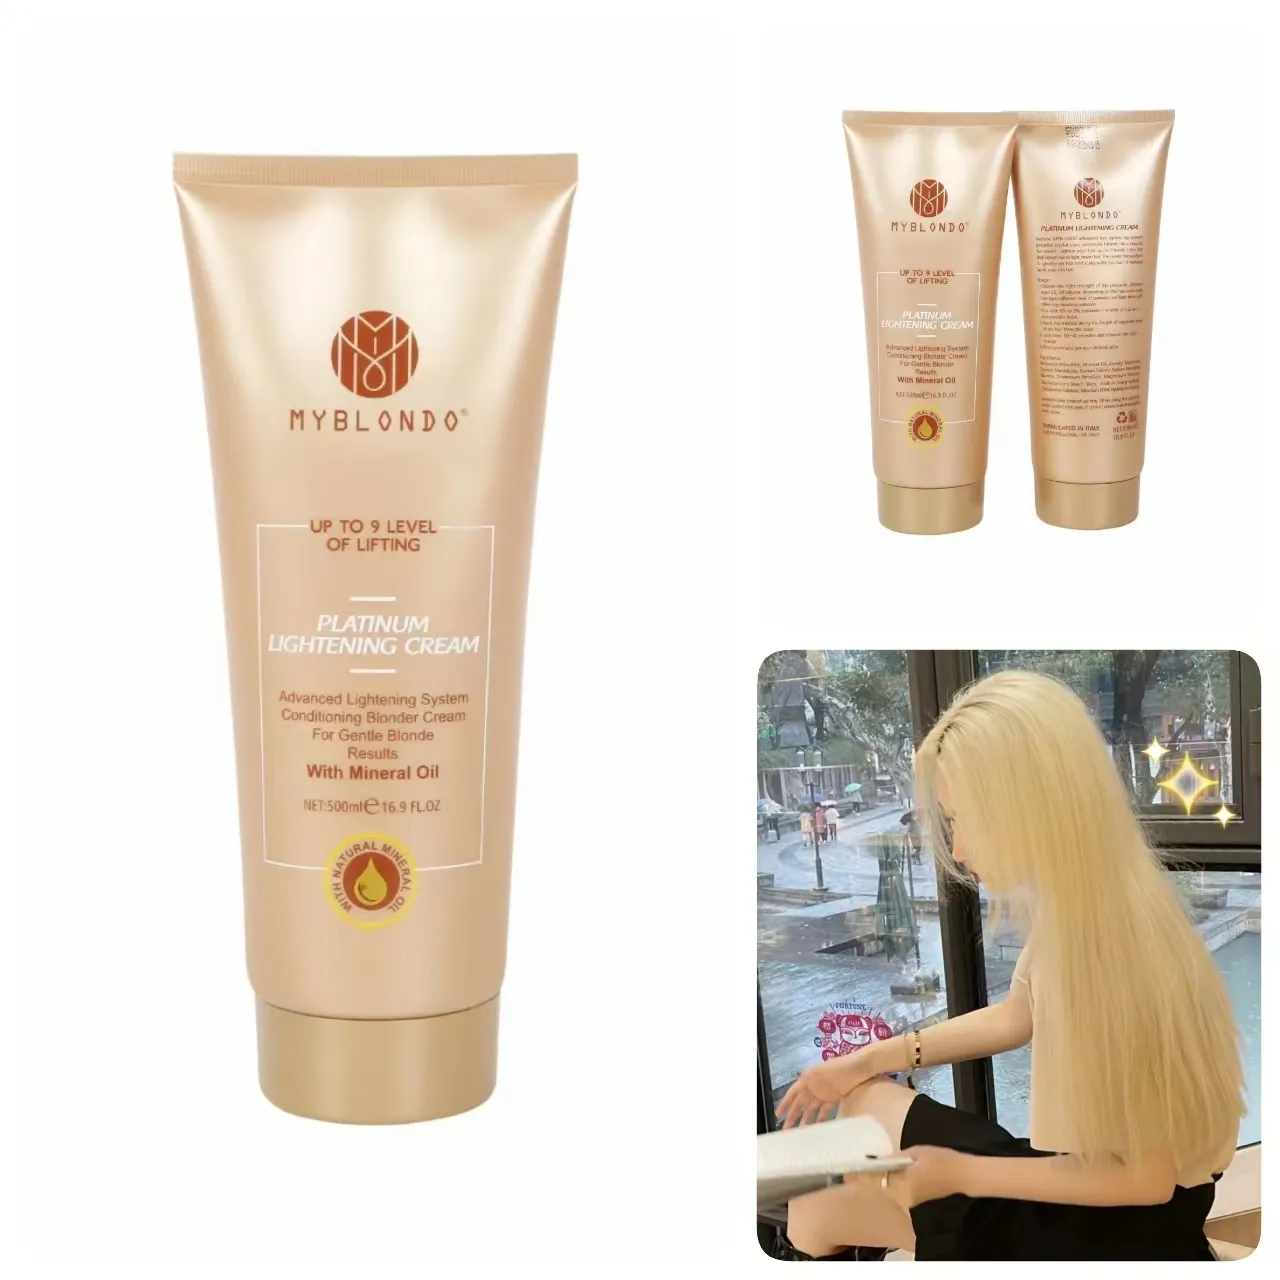 Oem Private Label Hair Bleach Cream Hair Bleach, up to 9 Level of Lifting Bleaching Cream